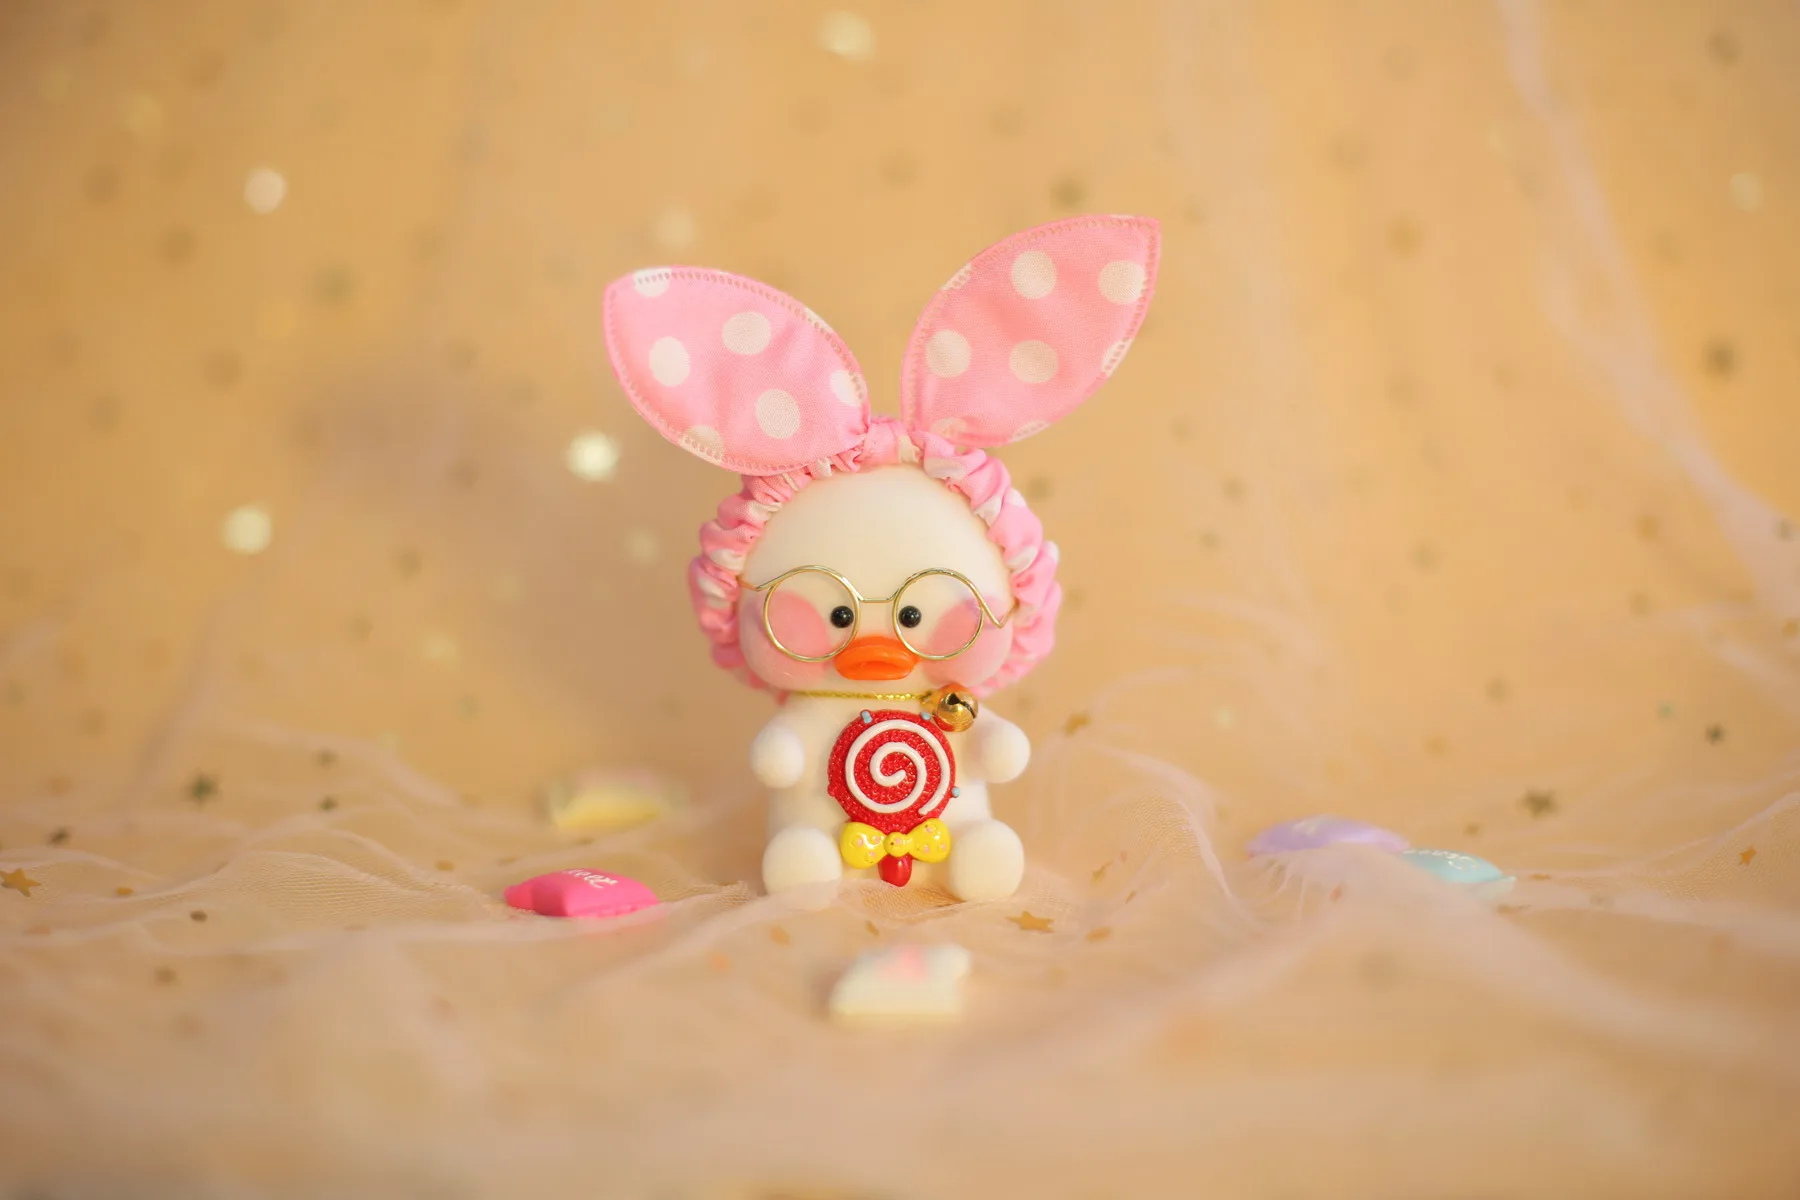 Kawaii подвеска с форме утки брелок мультфильм милый утка автомобиль Декор животные куклы девочка игрушки подарок на день рождения для детей милые плюшевые брелоки - Цвет: 3